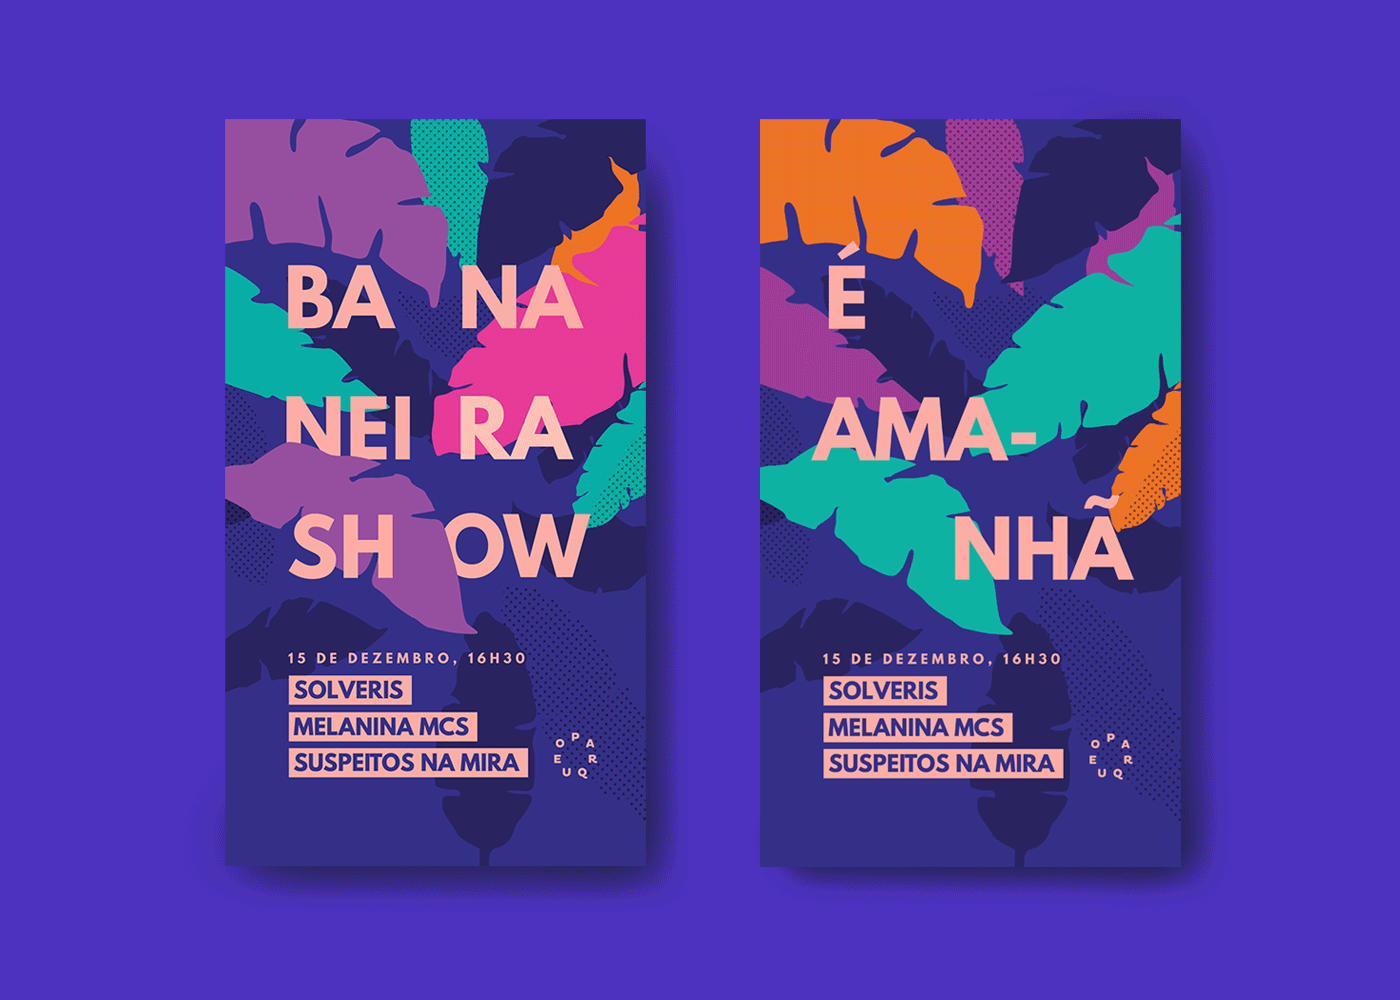 Direção de arte flyer social media design festival Event festival identity poster Show mídias sociais